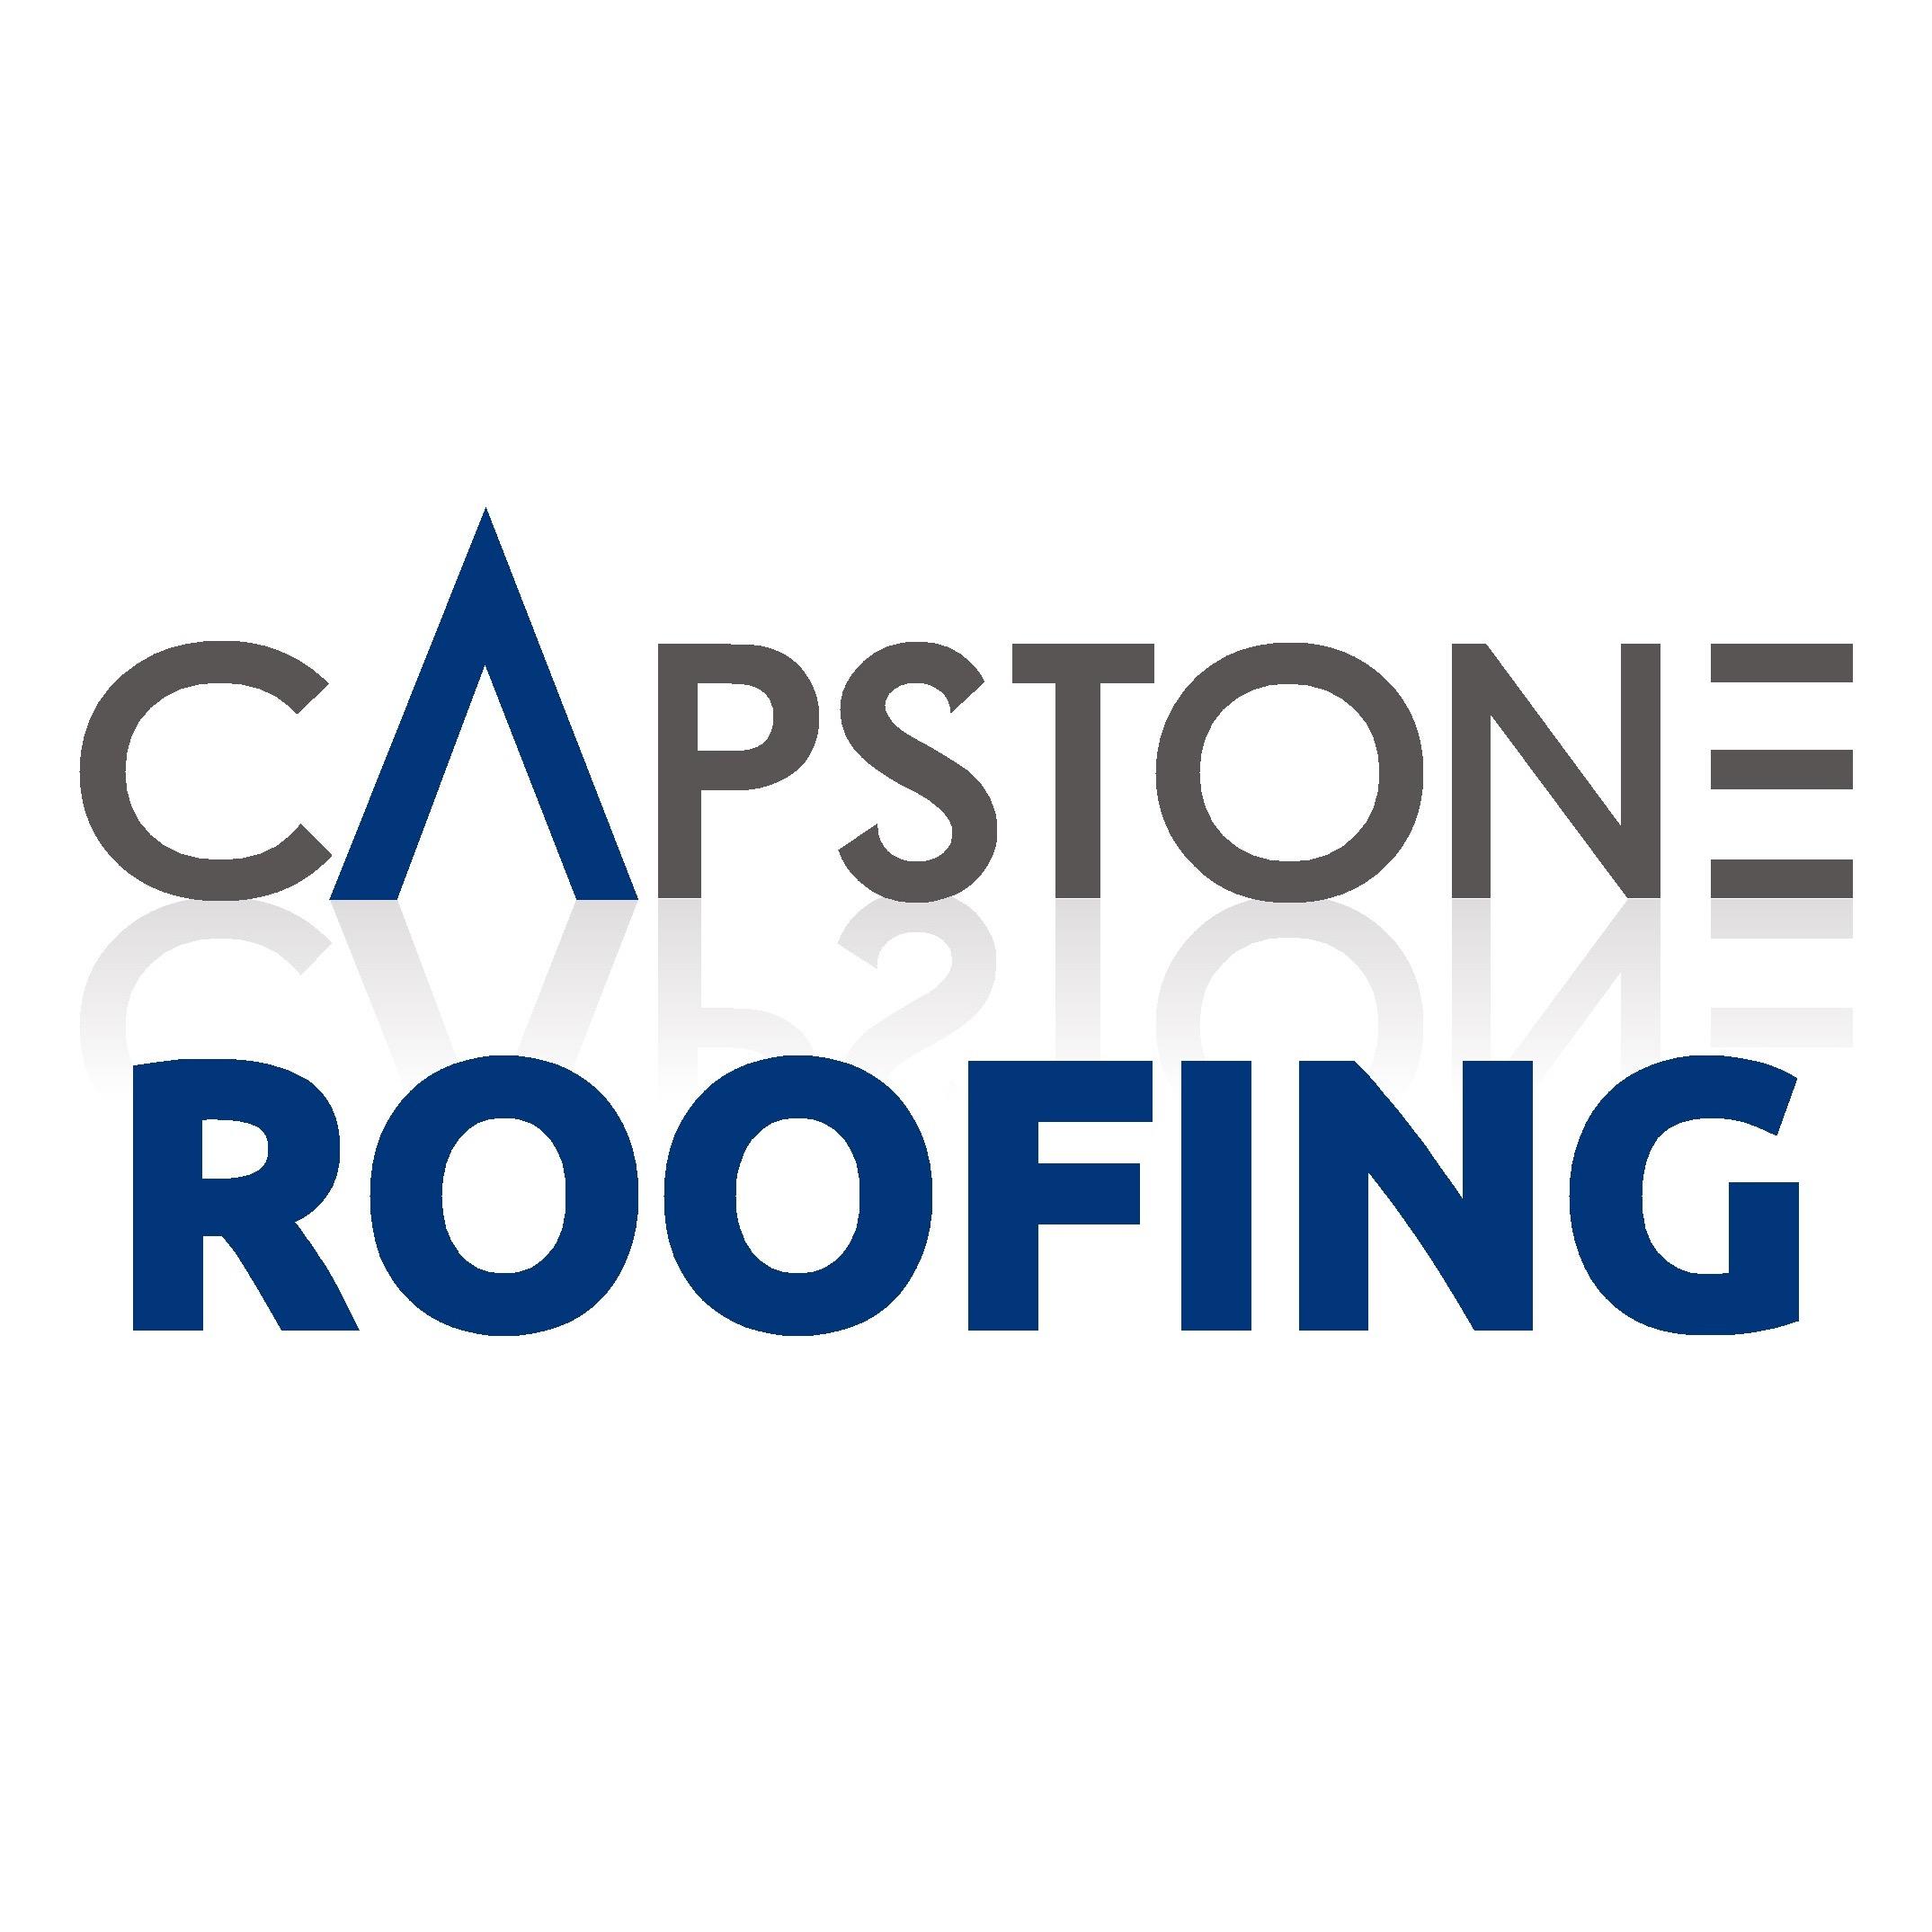 Capstone Roofing, LLC - Birmingham, AL 35244 - (205)453-1803 | ShowMeLocal.com